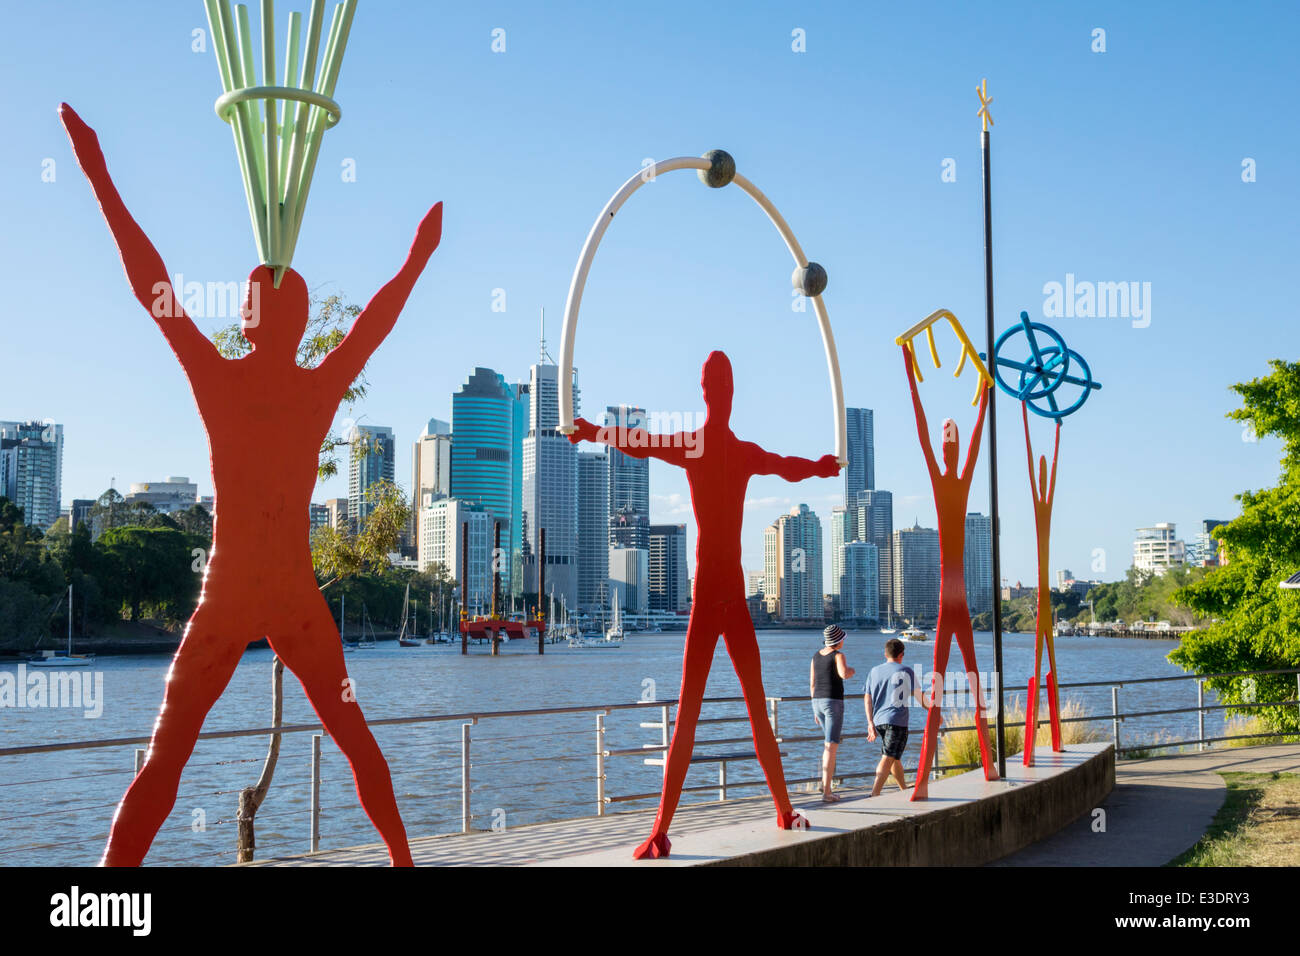 Brisbane Australien, Kangaroo Point Cliffs, Brisbane River CBD, Skyline der Stadt, Wolkenkratzer, Gebäude, öffentliche Kunst, Skulptur, AU140315092 Stockfoto